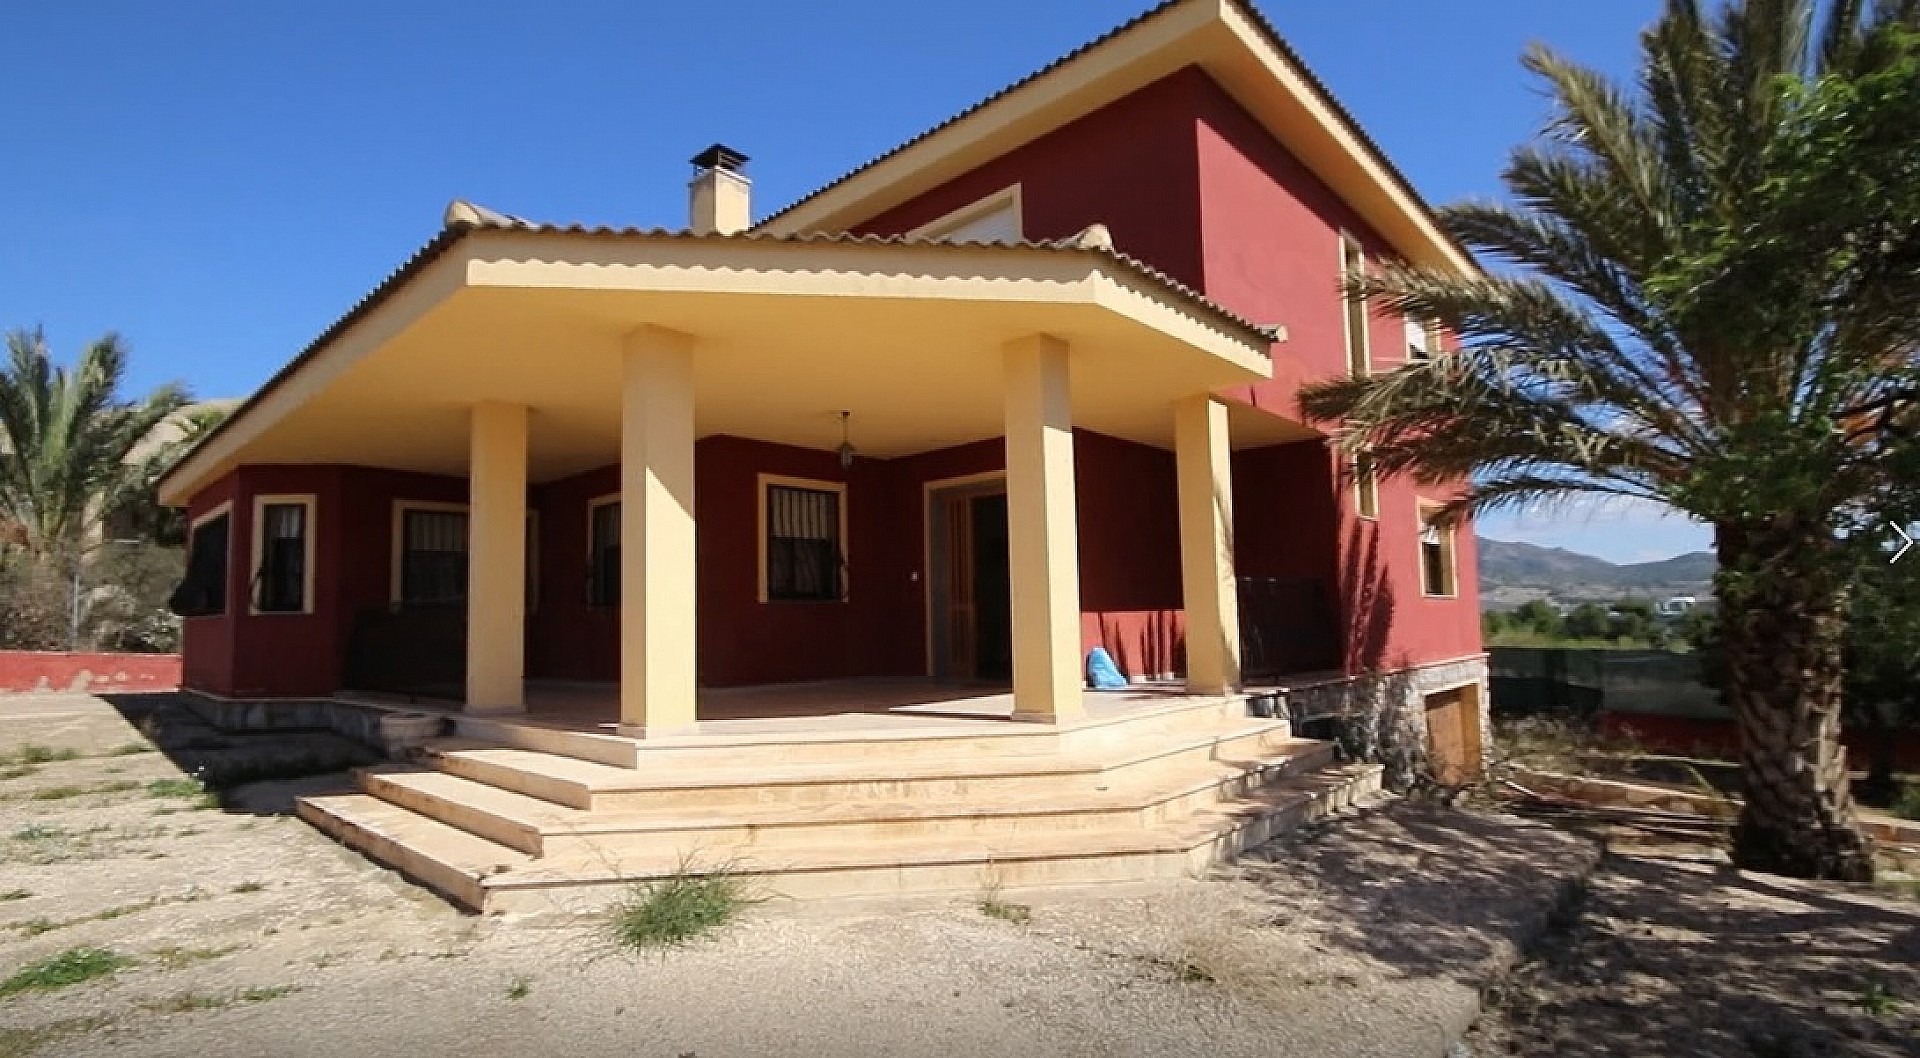 For sale: 5 bedroom house / villa in Salinas, Costa Blanca